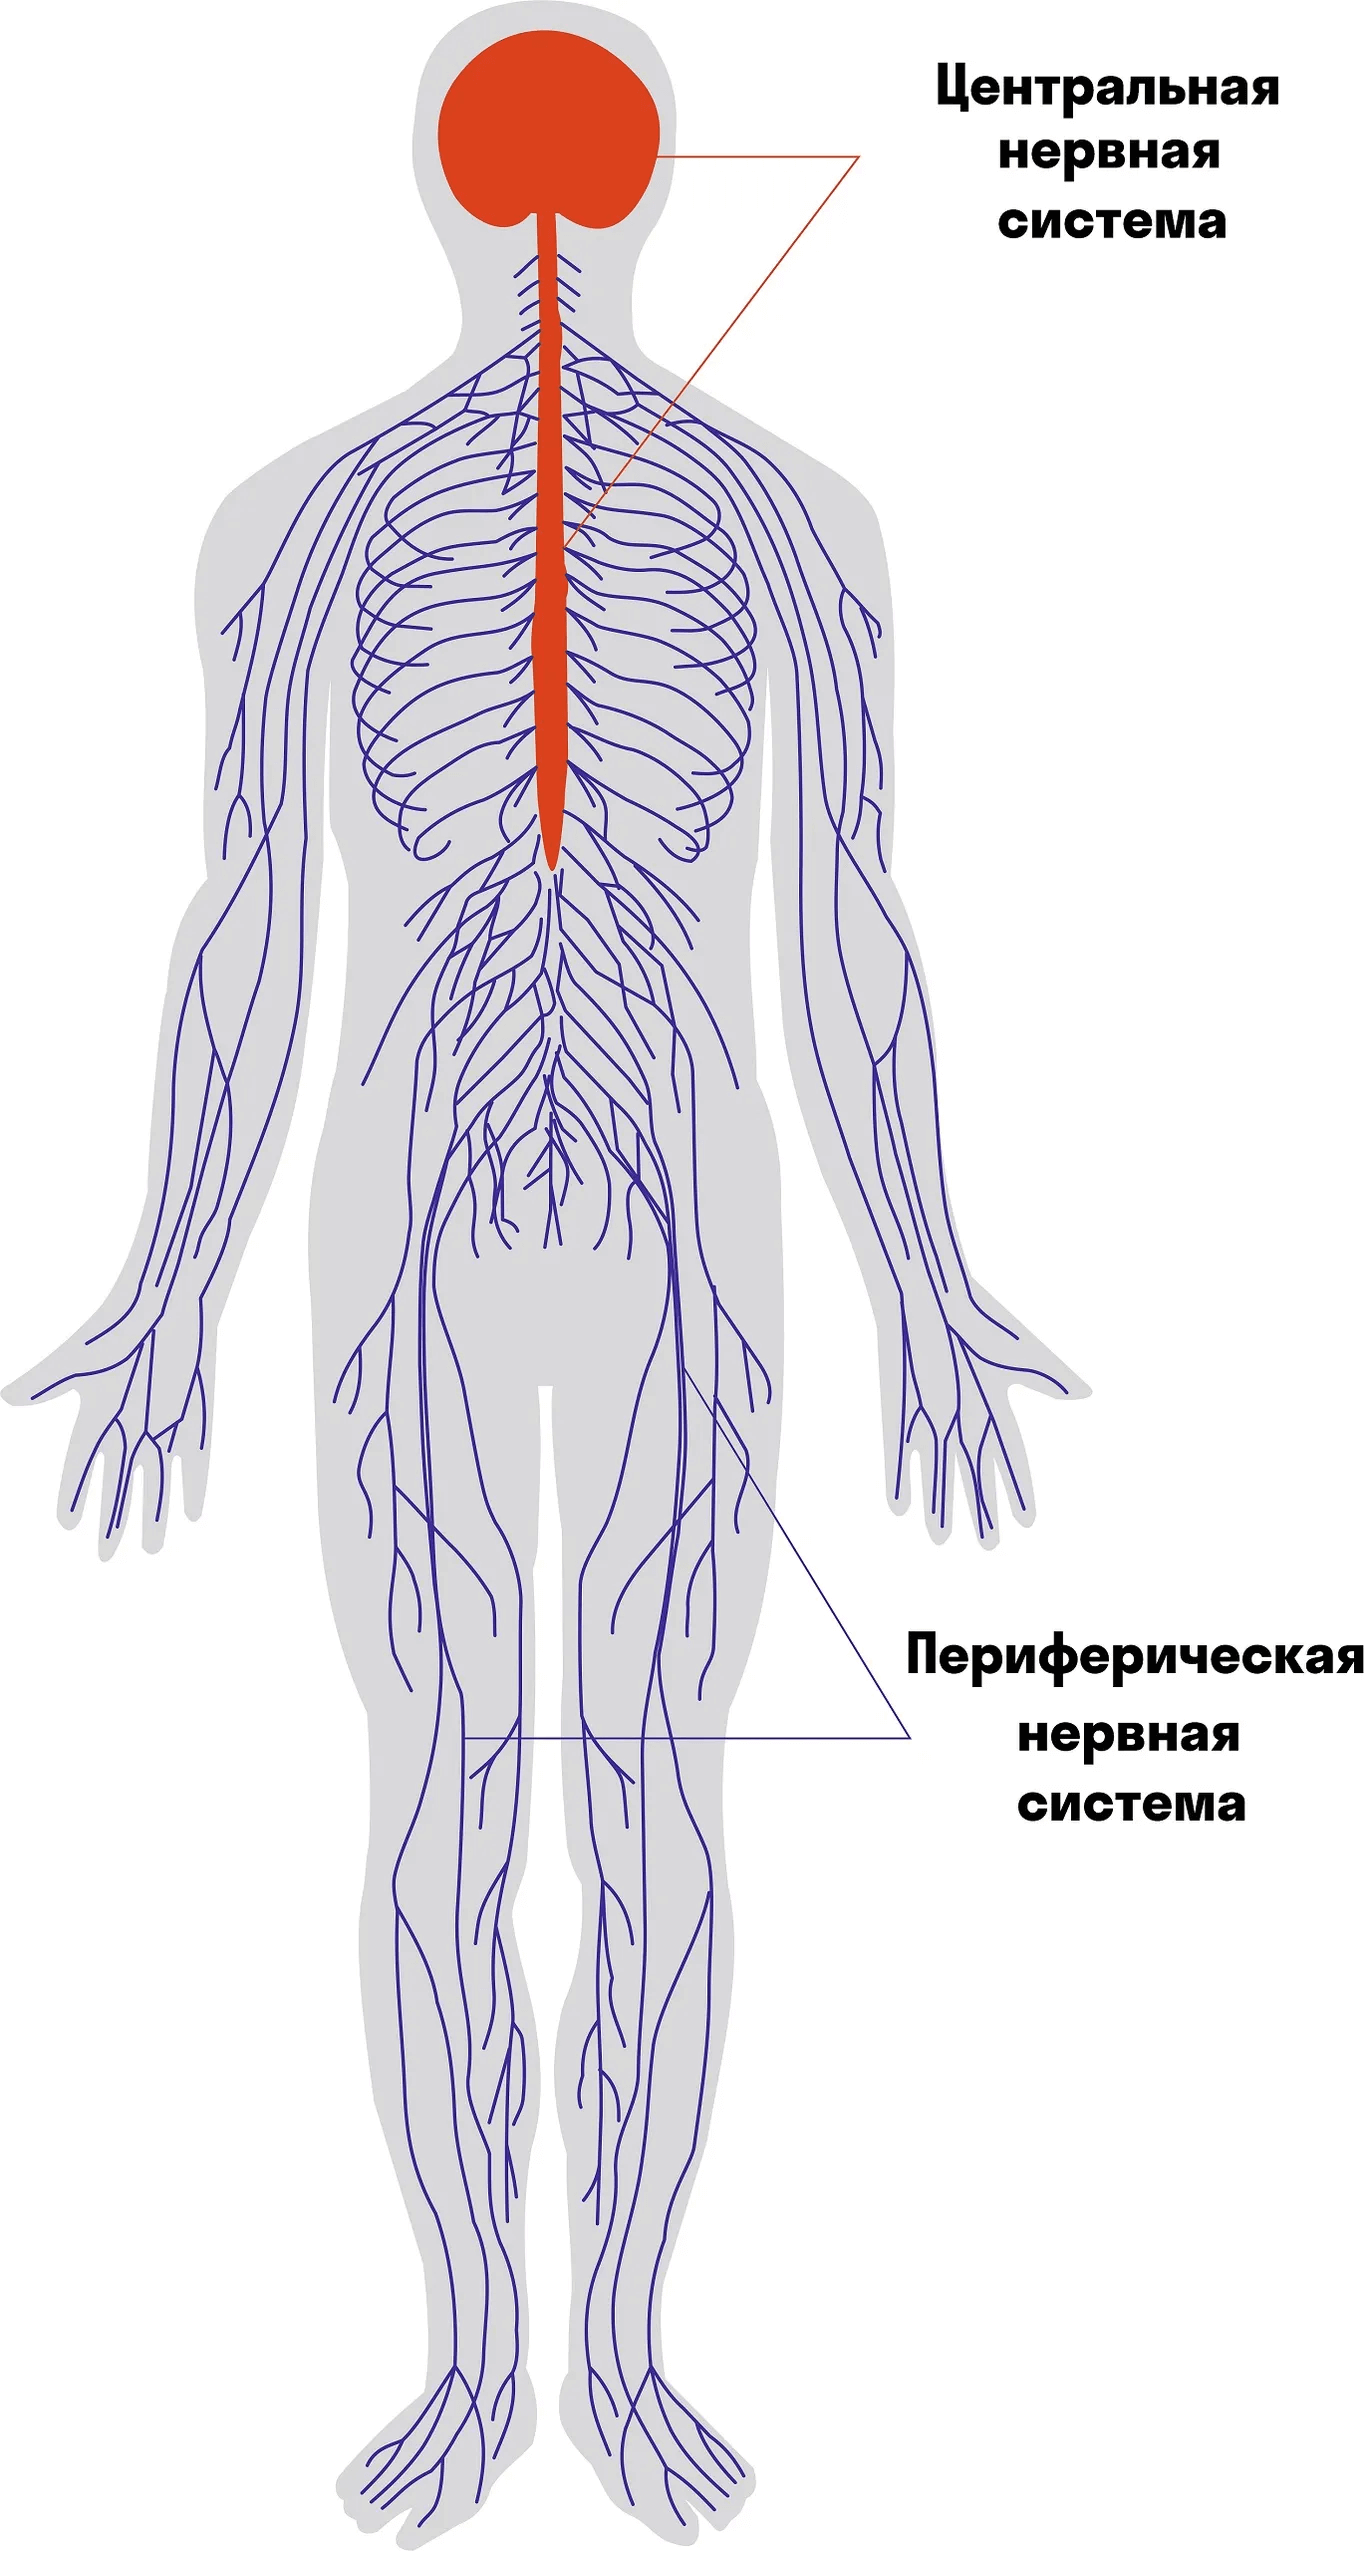 Центральная и периферическая нервная система